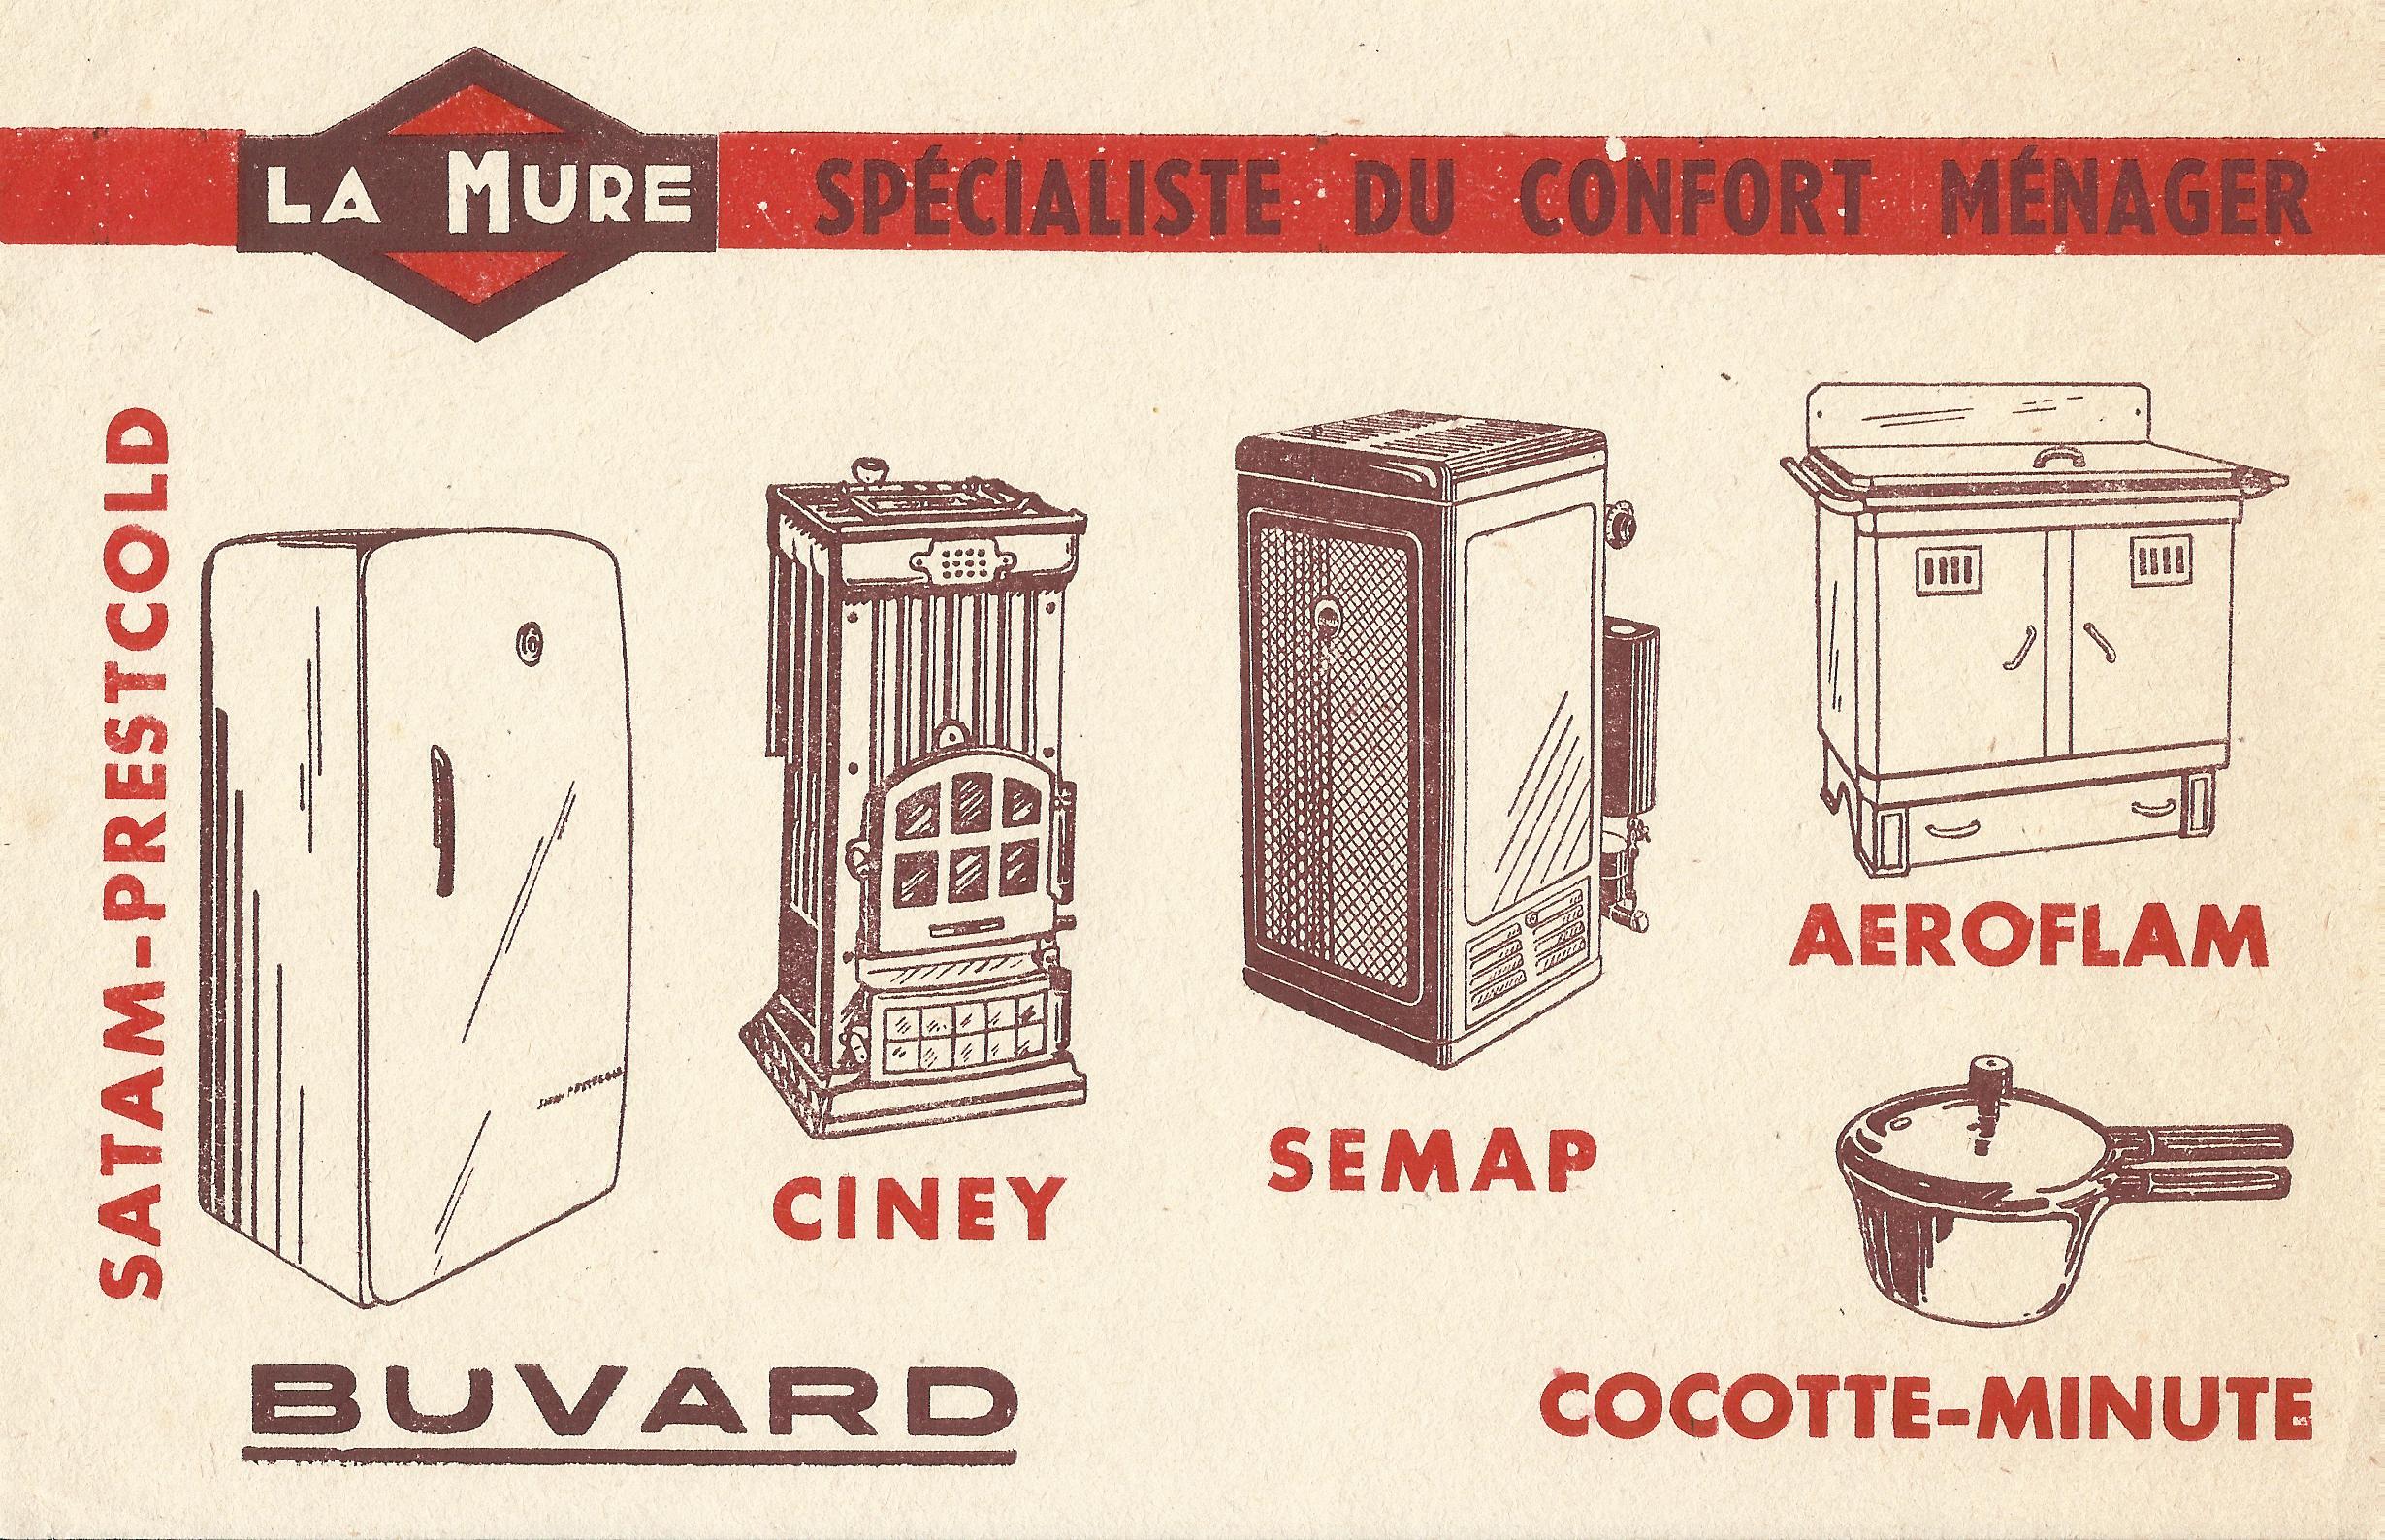 Buvard présentant les différents produits de la gamme Confort Ménager de La Mure